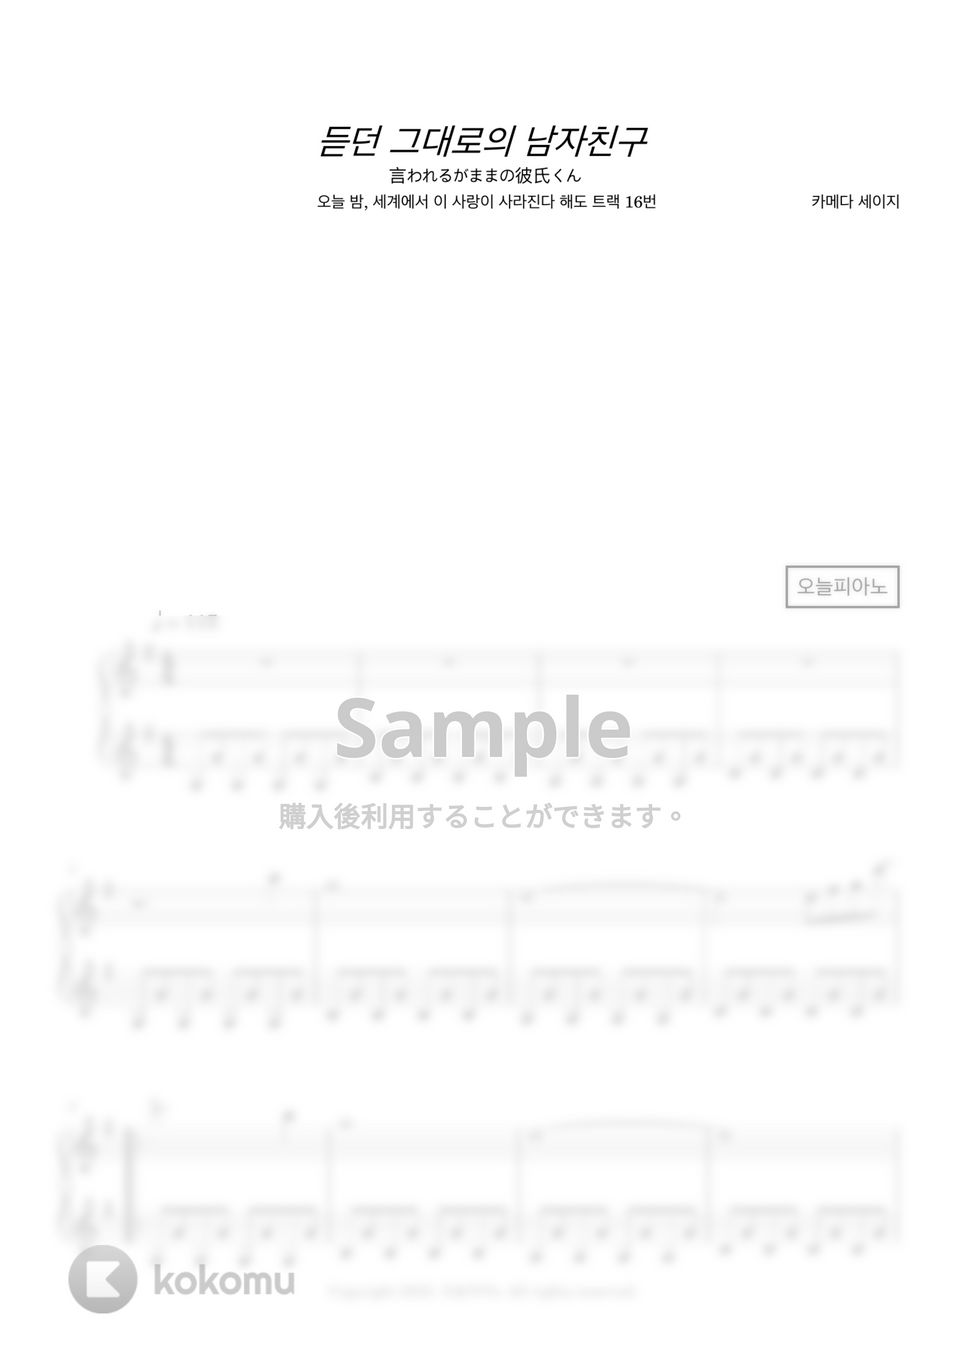 Seiji Kameda - 言われるがままの彼氏くん (今夜、世界からこの恋が消えても track 16) by 今日ピアノ(Oneul Piano)